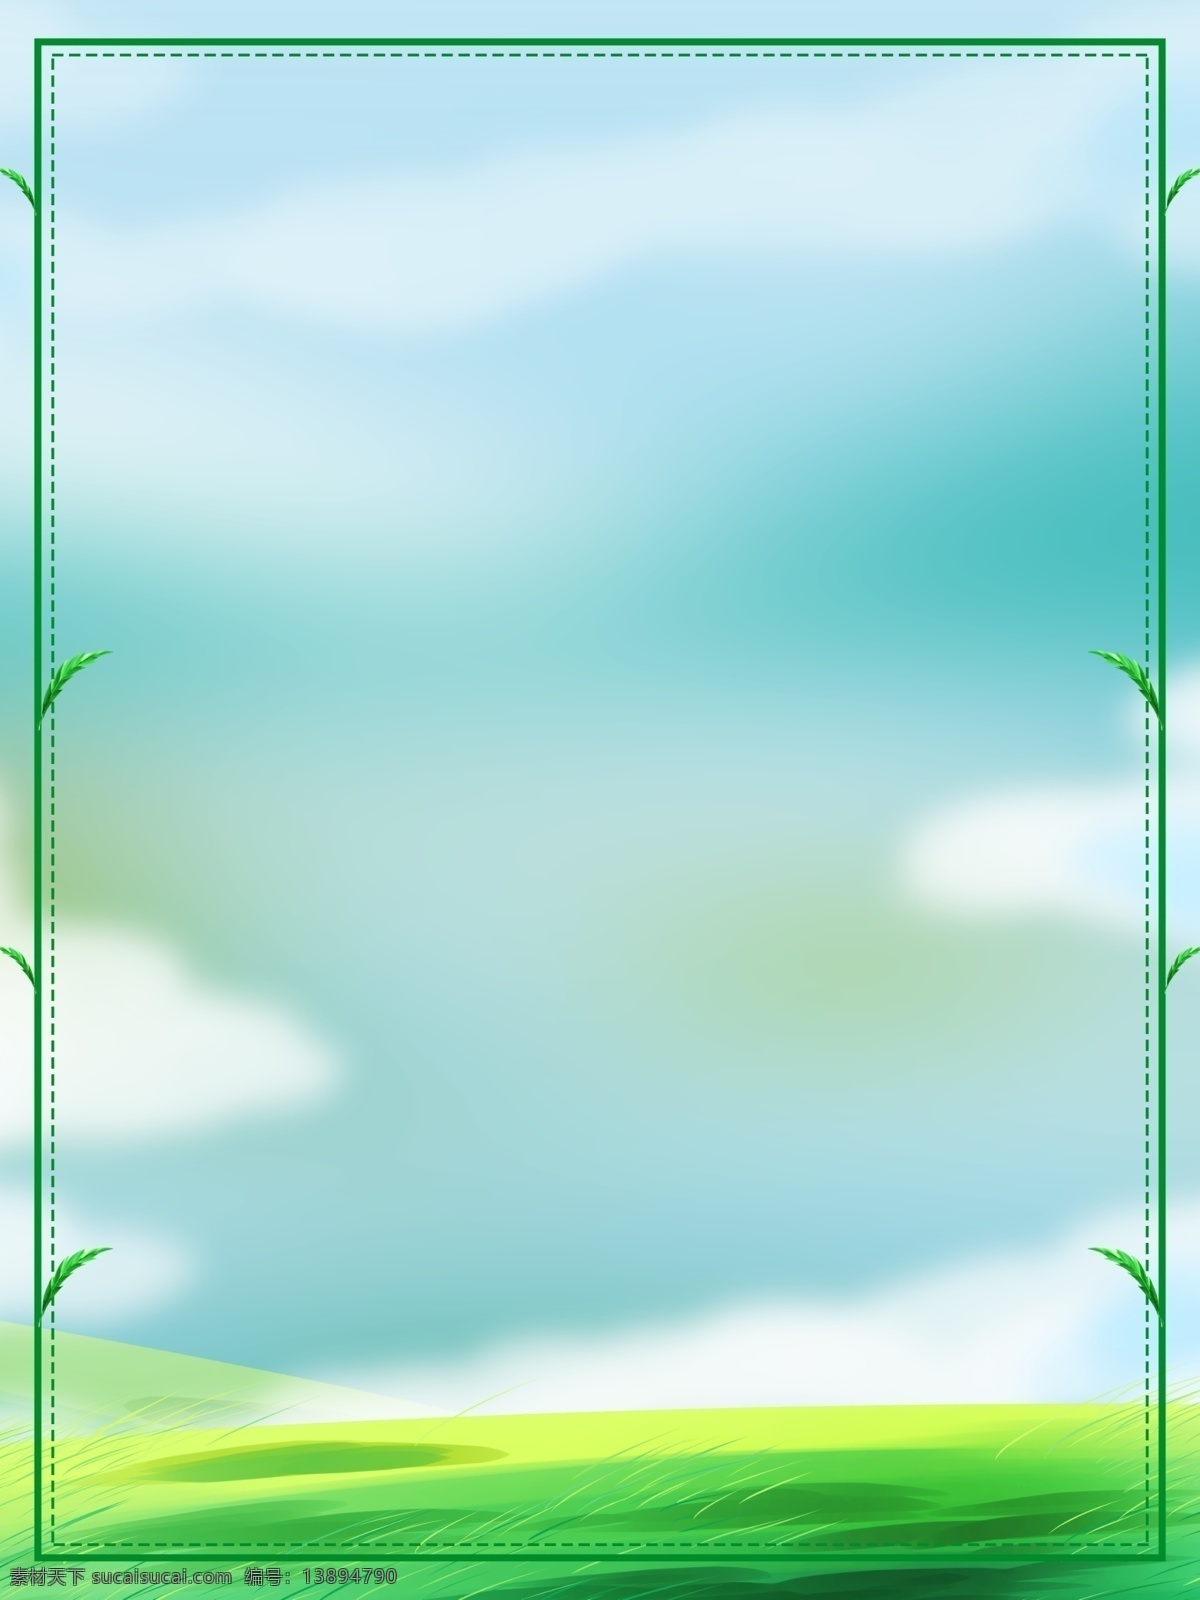 彩绘 绿色 模板 环保 边框 背景 夏天背景 环境保护 绿叶 广告背景 通用背景 psd背景 背景展板图 背景图